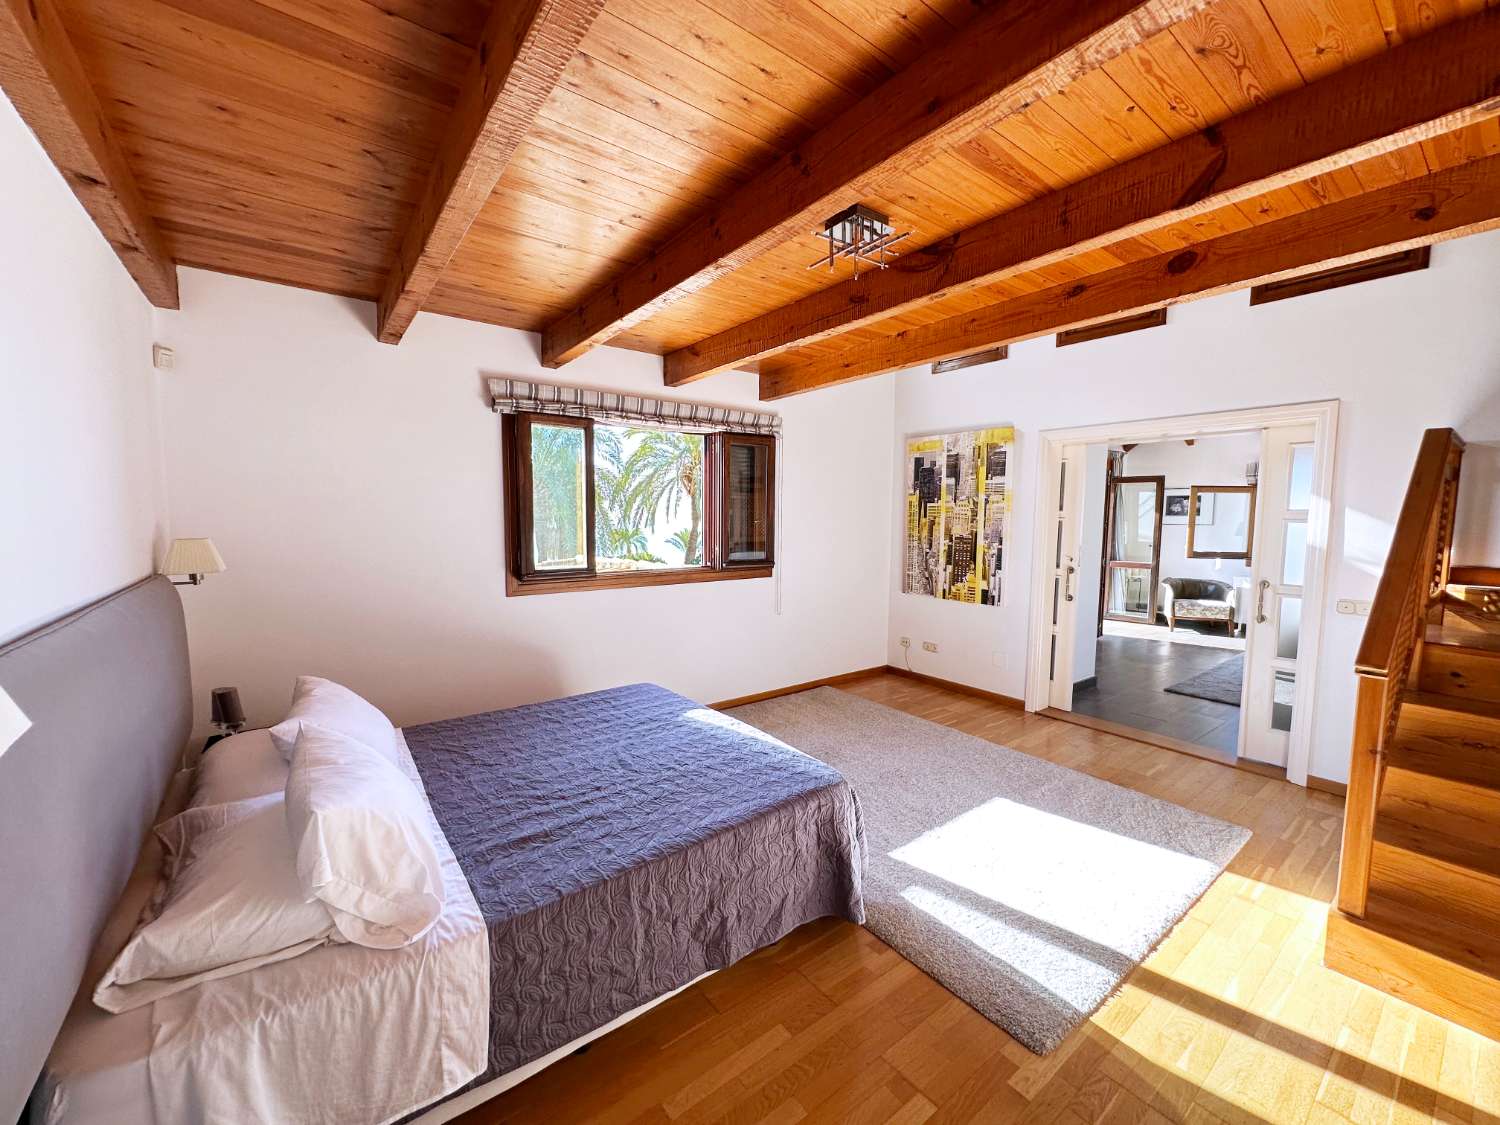 للبيع, 6 غرف نوم فيلا في سييرا بلانكا, ماربيا.  قطعة أرض مساحتها 2,090 متر مربع.